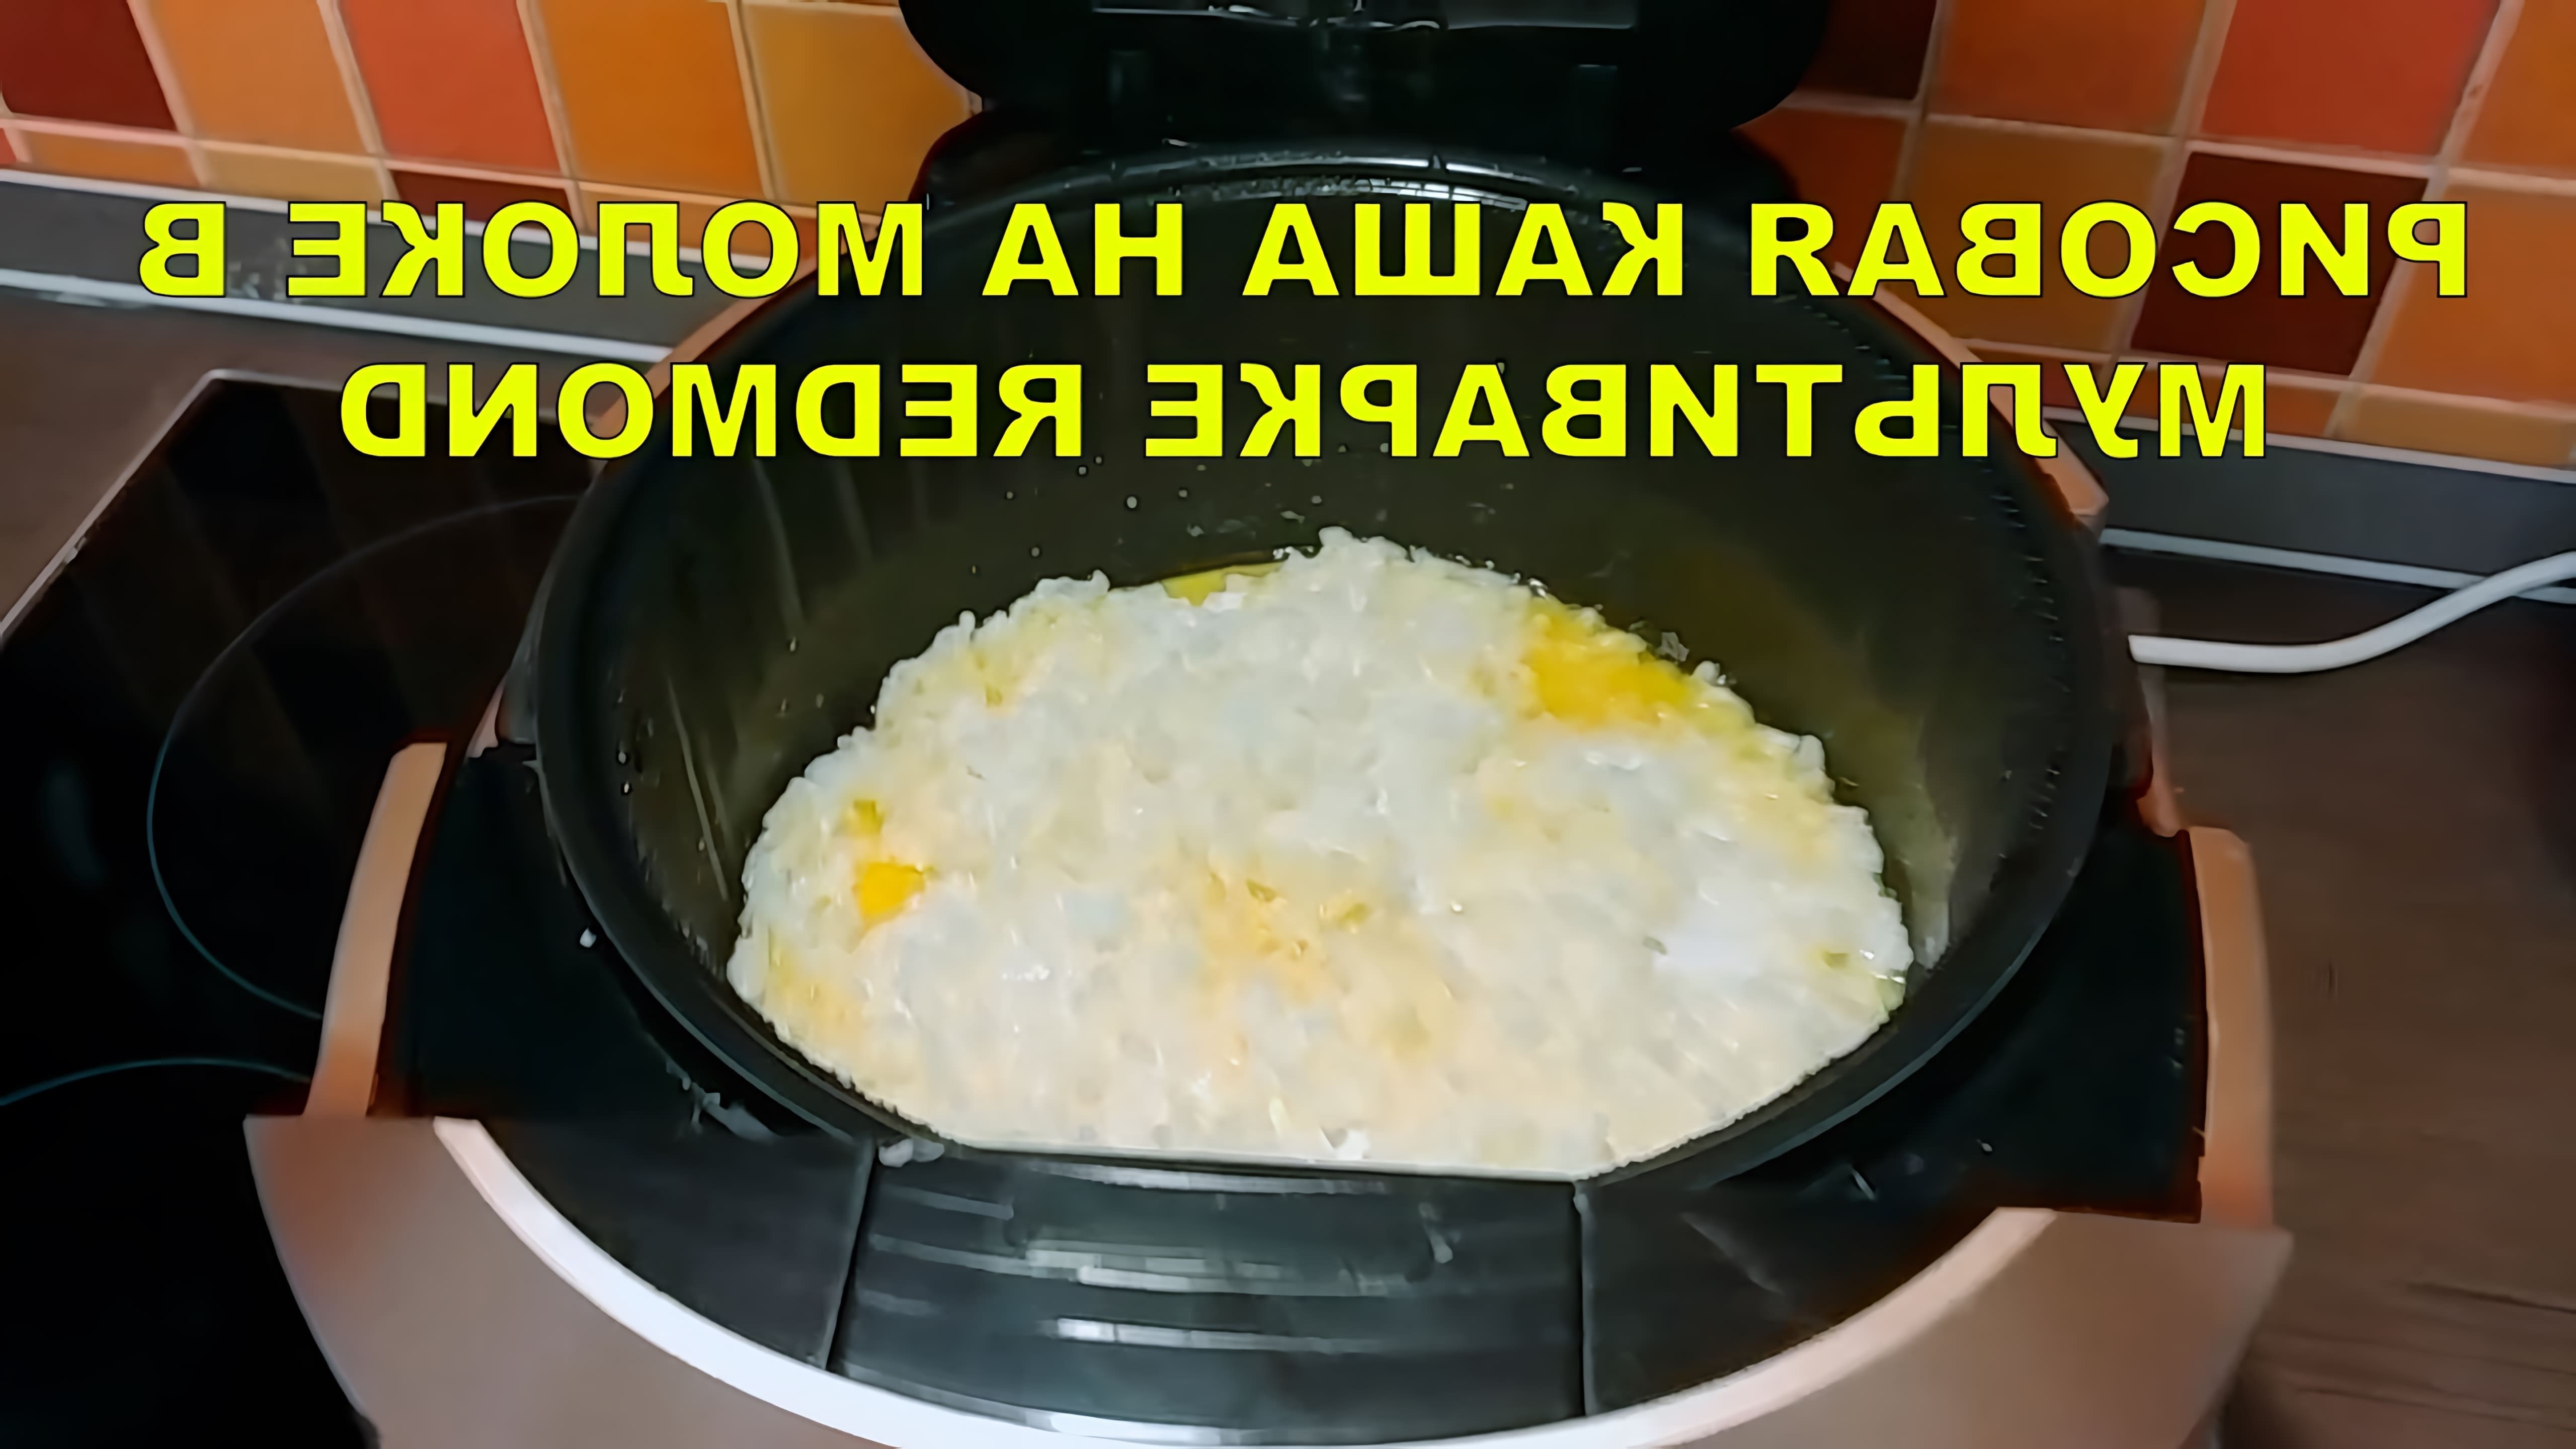 В этом видео показано, как приготовить рисовую молочную кашу в мультиварке Redmond